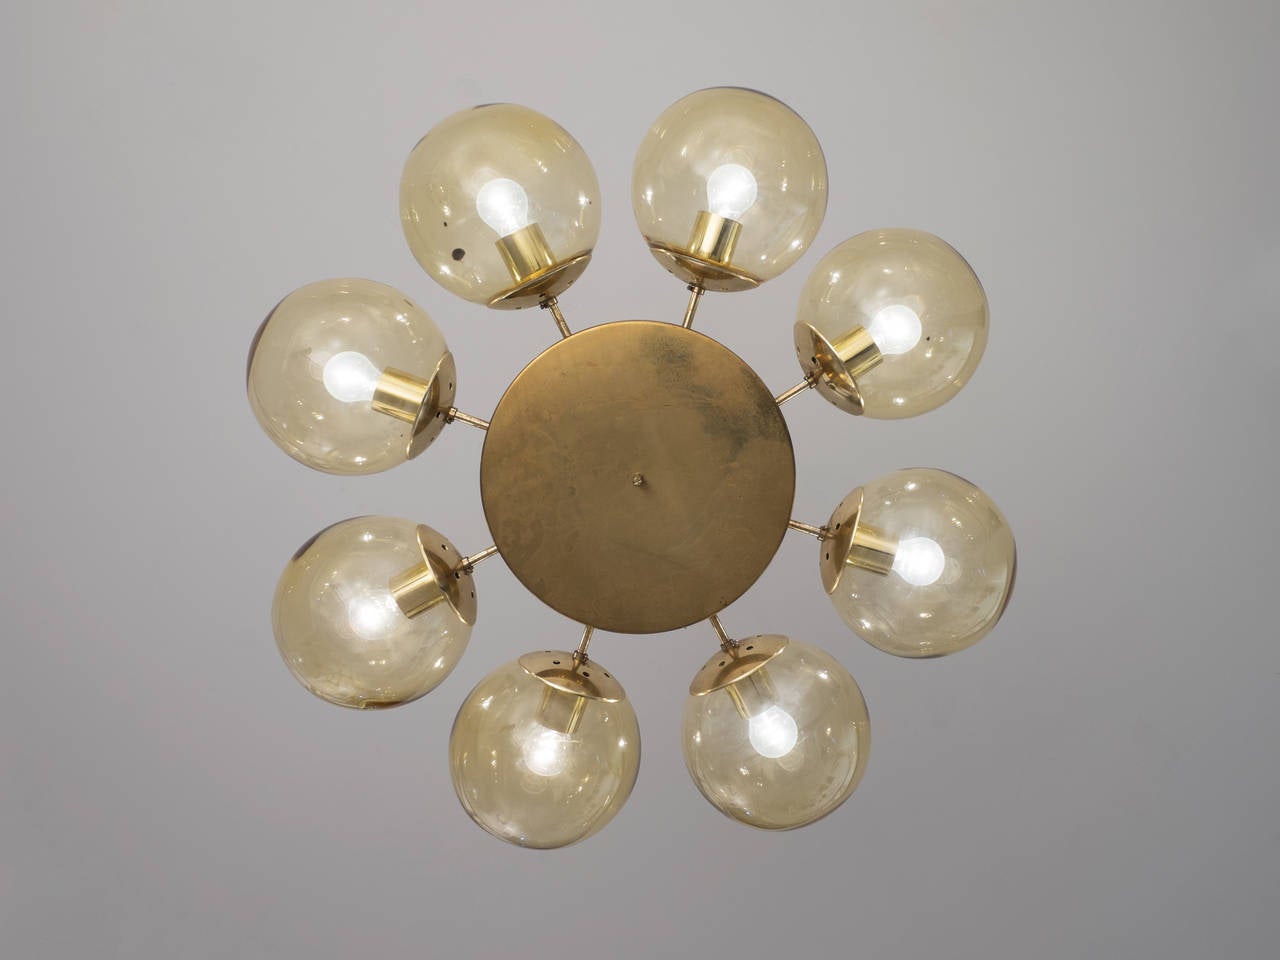 Scandinavian Solid Brass Chandelier with Yellow Spheres